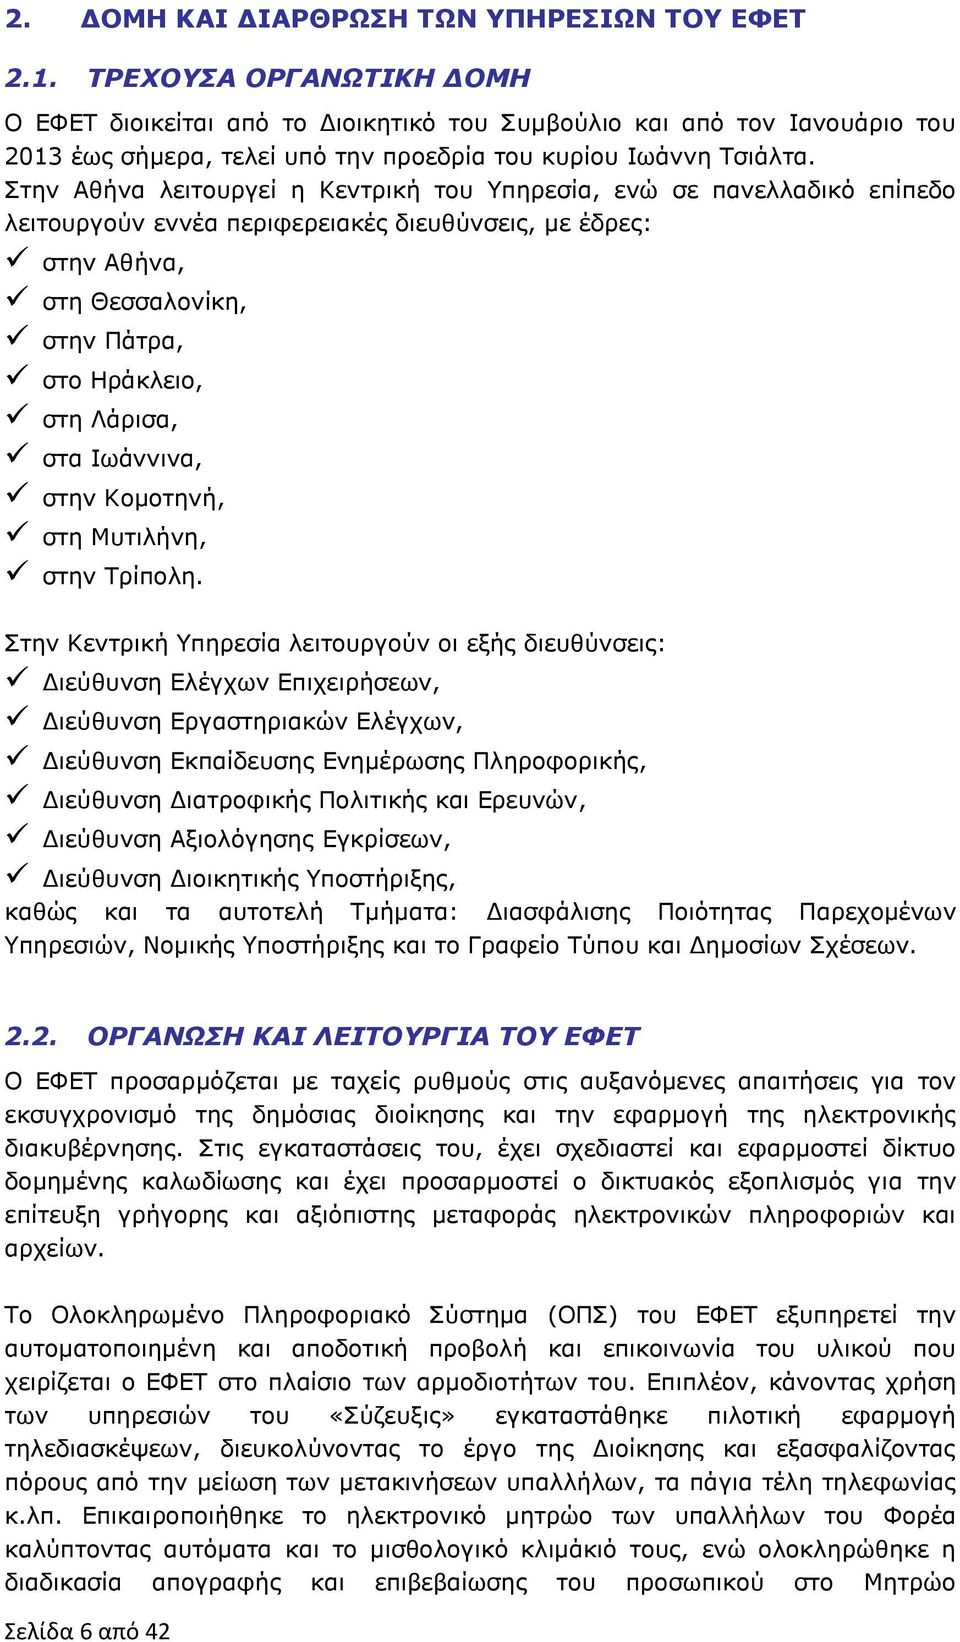 Στην Αθήνα λειτουργεί η Κεντρική του Υπηρεσία, ενώ σε πανελλαδικό επίπεδο λειτουργούν εννέα περιφερειακές διευθύνσεις, με έδρες: στην Αθήνα, στη Θεσσαλονίκη, στην Πάτρα, στο Ηράκλειο, στη Λάρισα, στα